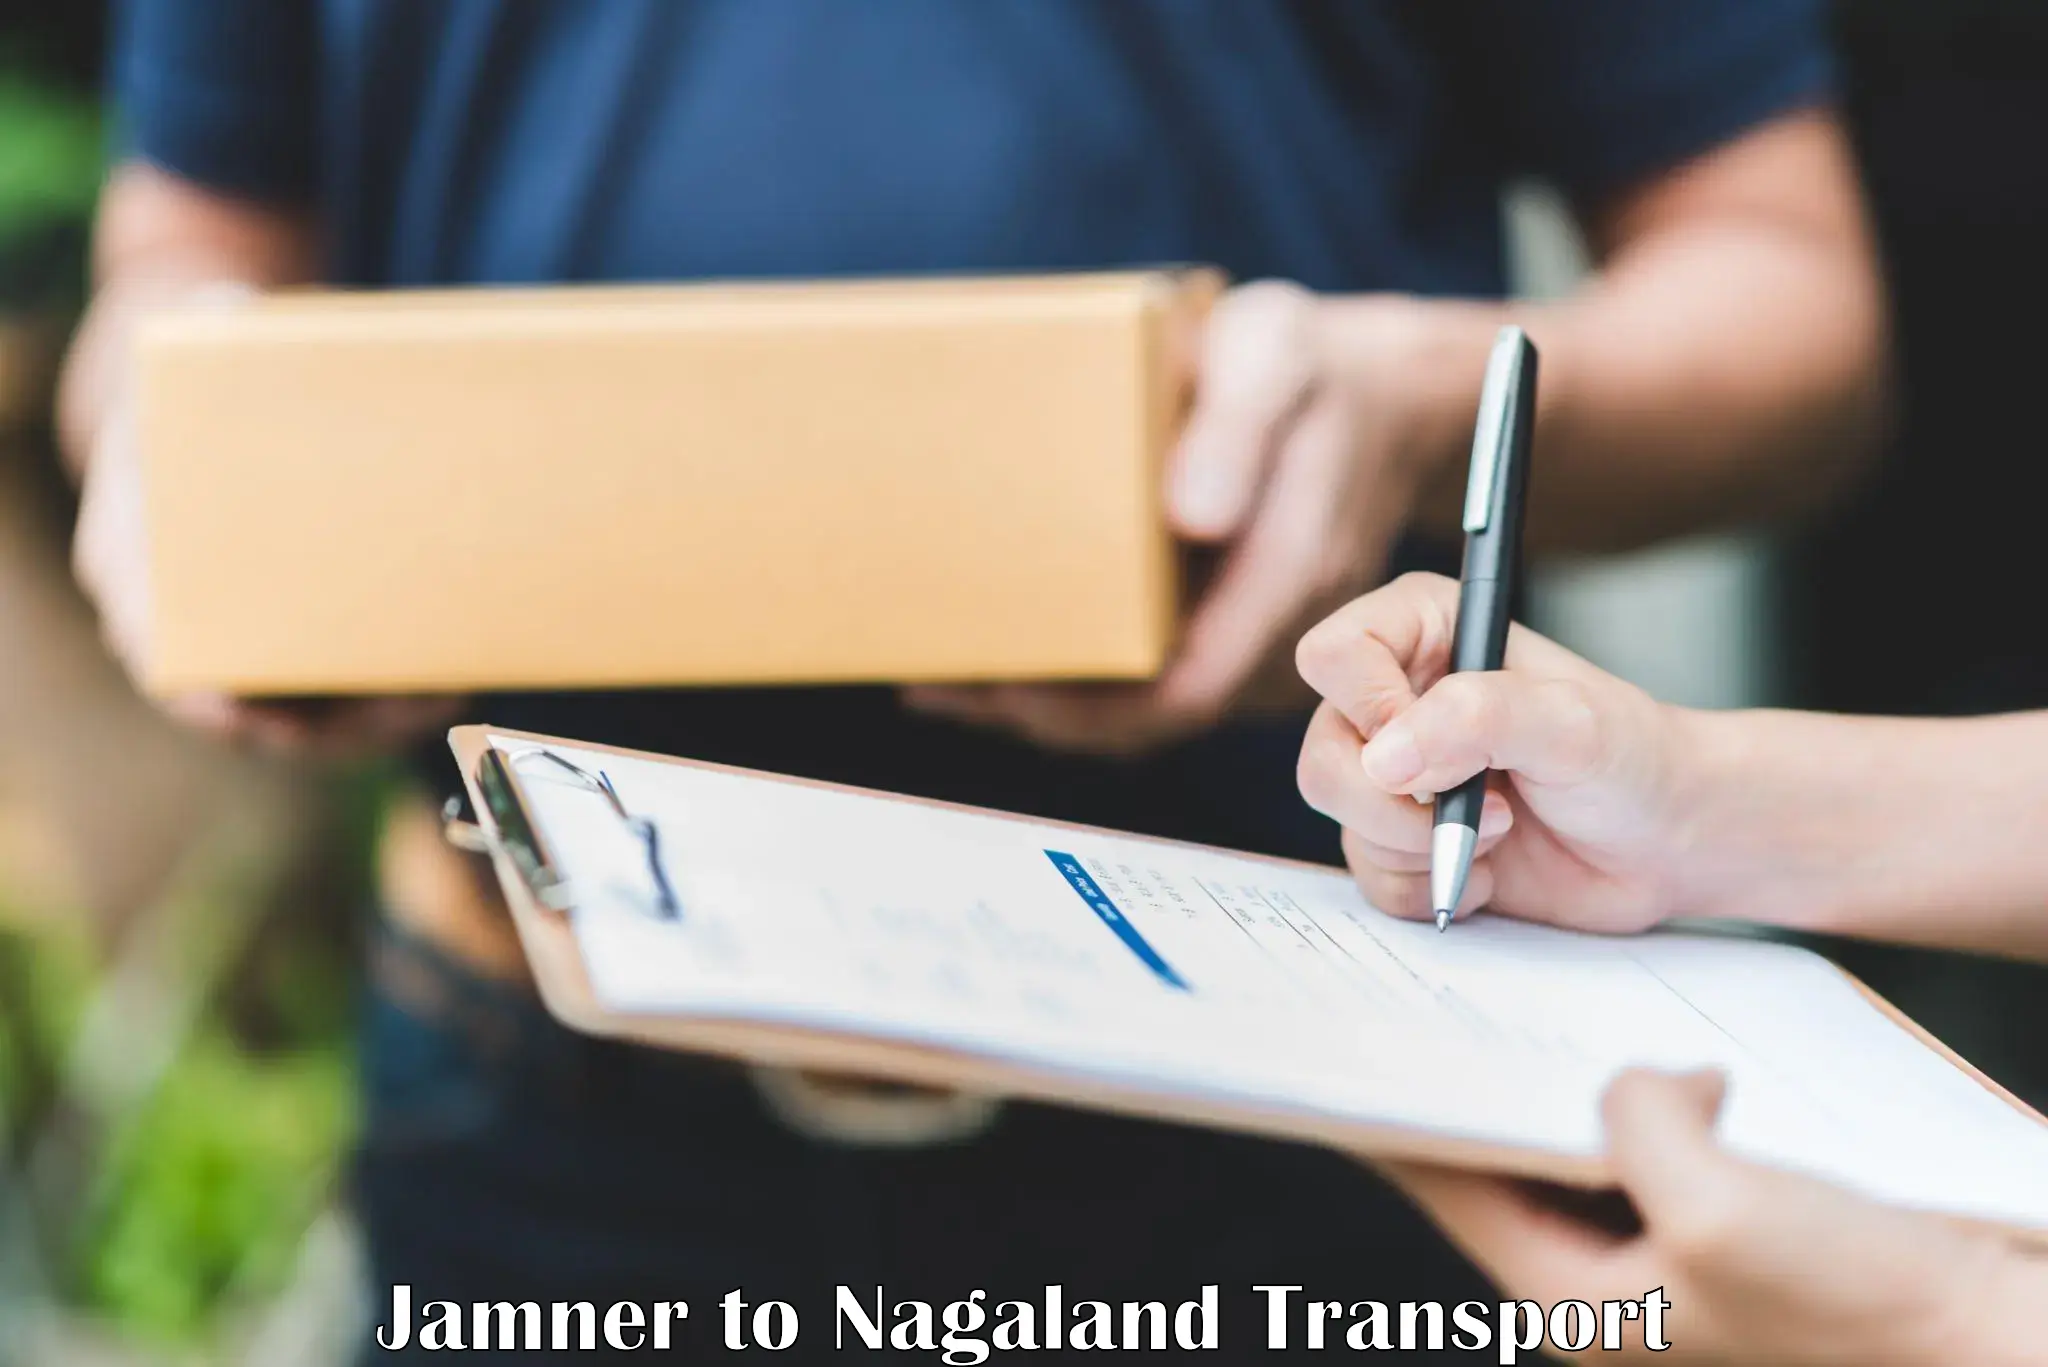 Daily parcel service transport Jamner to Nagaland